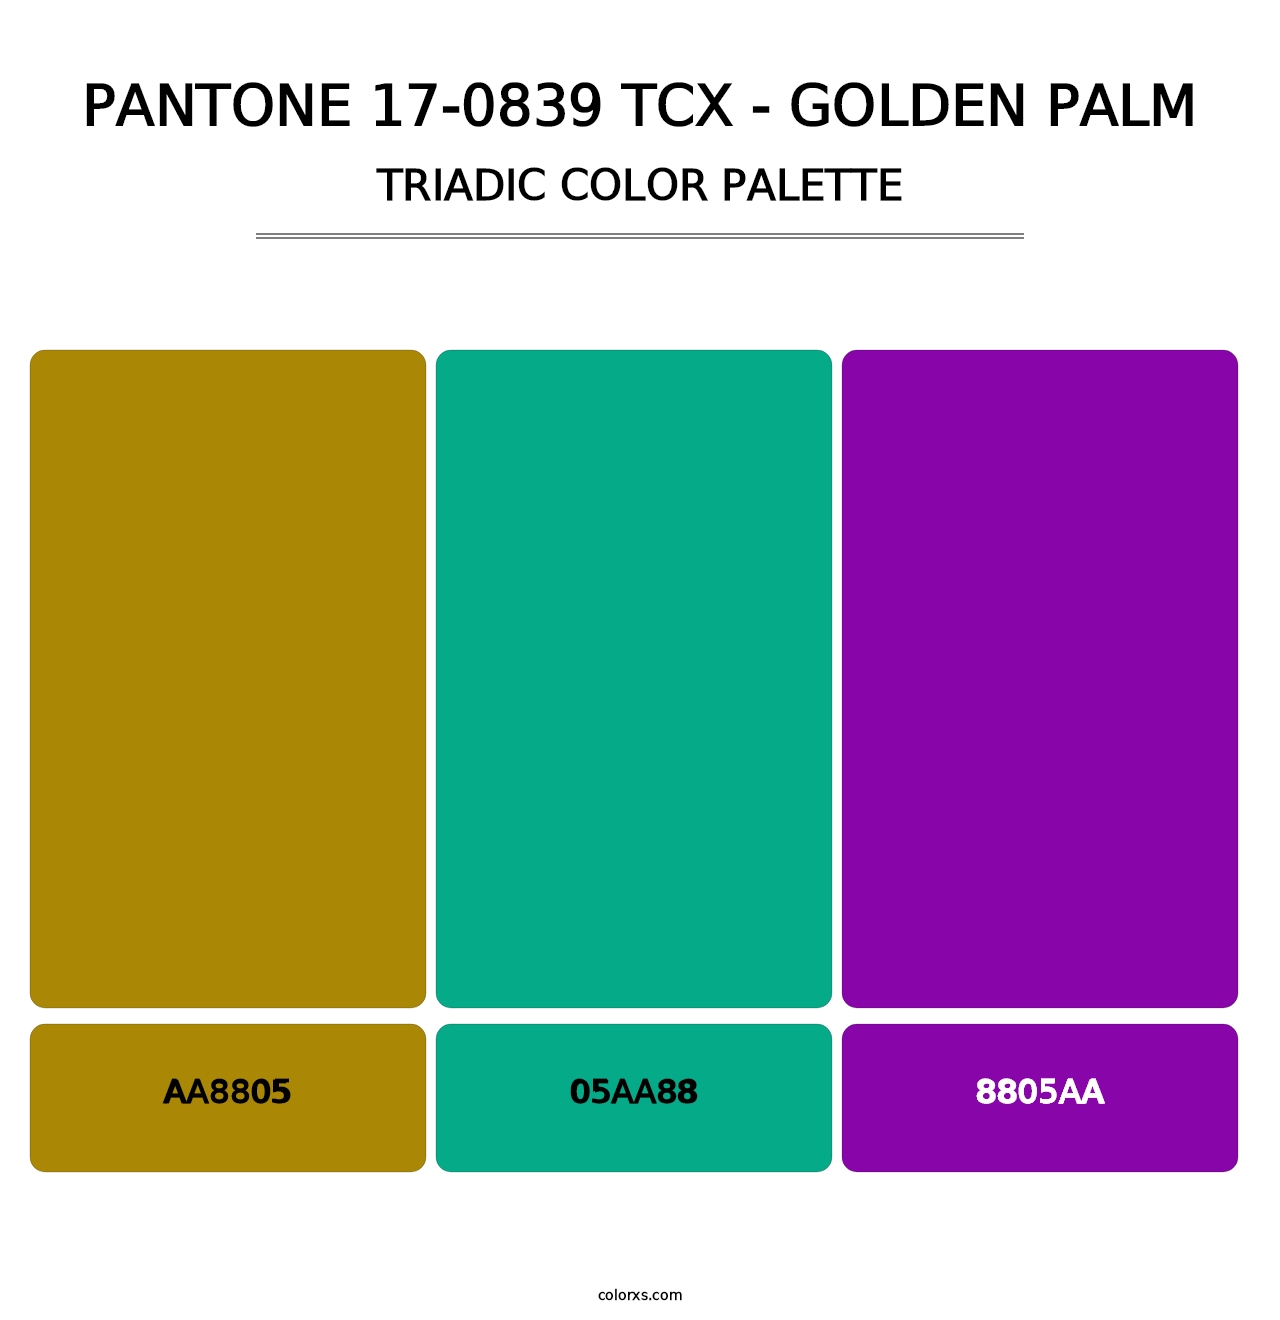 PANTONE 17-0839 TCX - Golden Palm - Triadic Color Palette